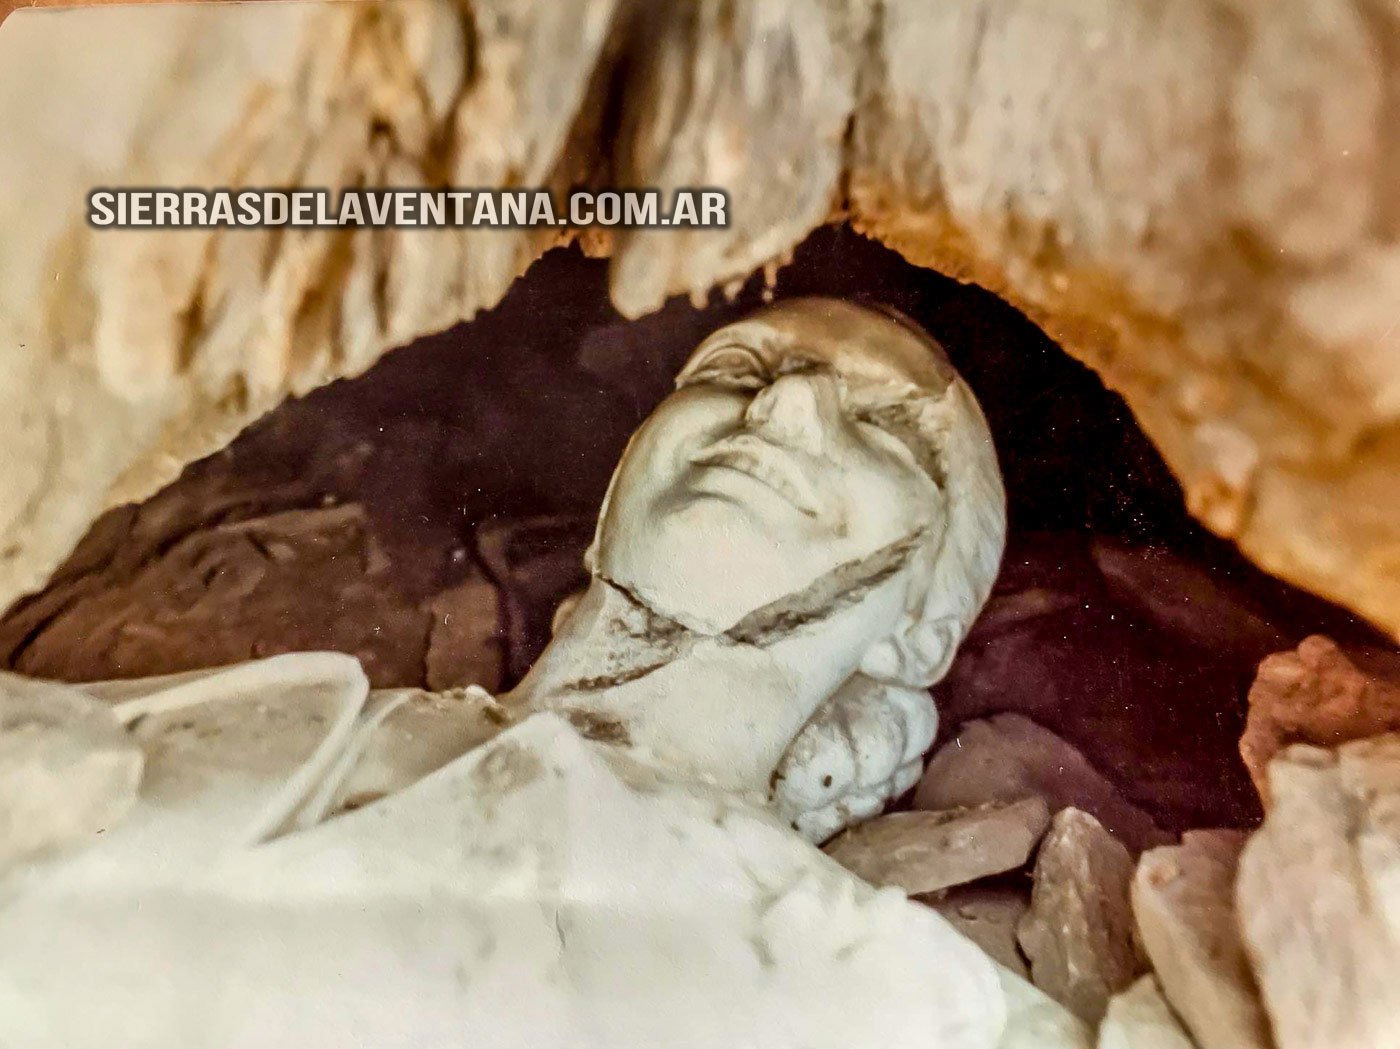 El busto de Eva Perón oculto en las Sierras de Villa Ventana